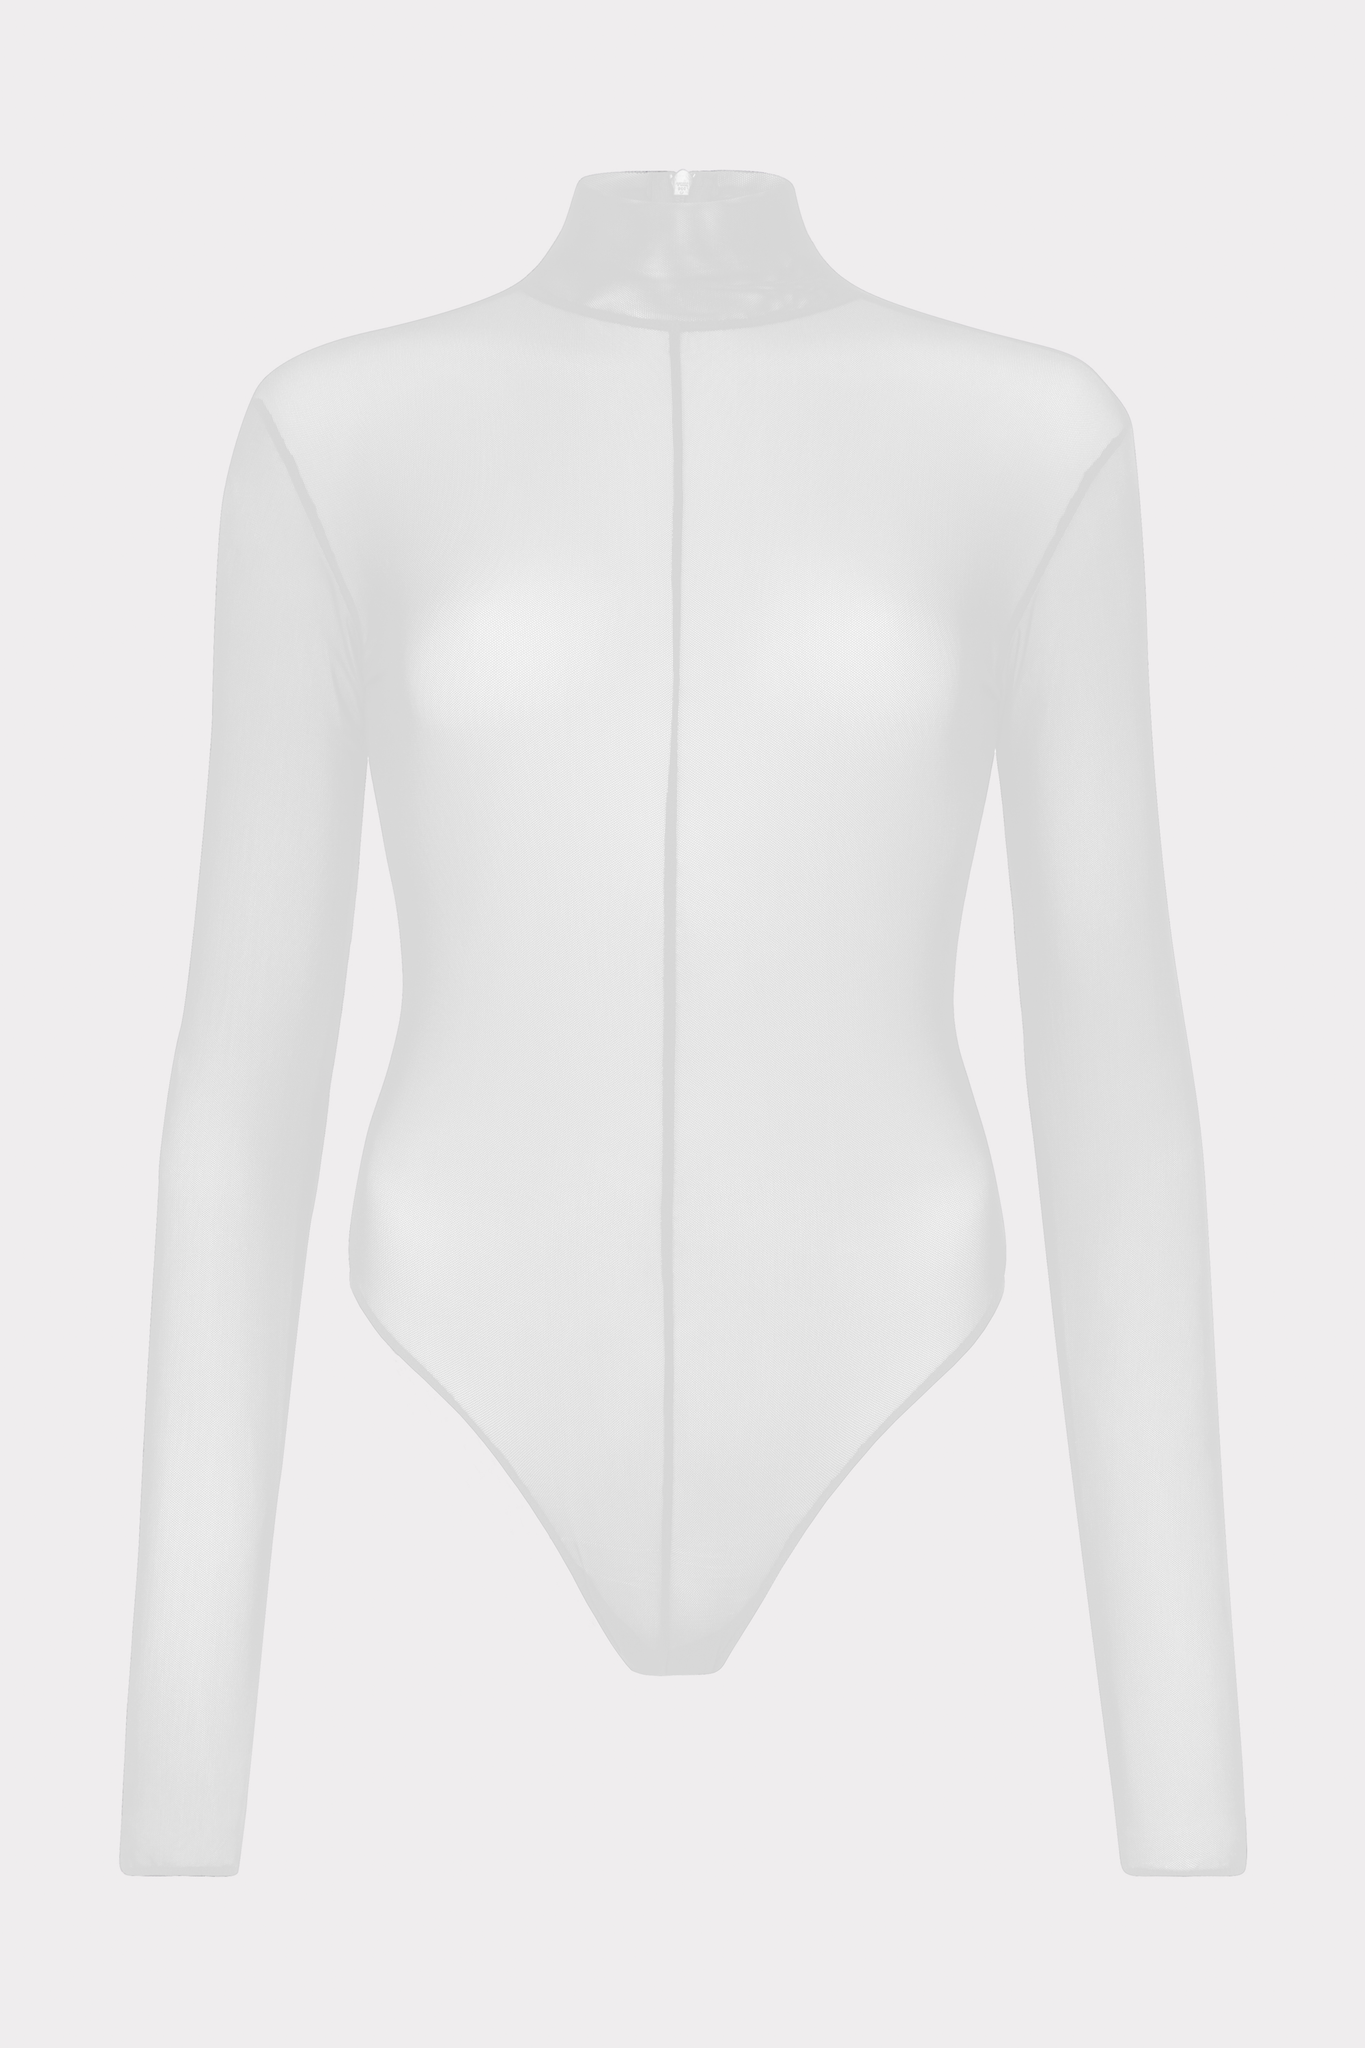 The Bodysuit White